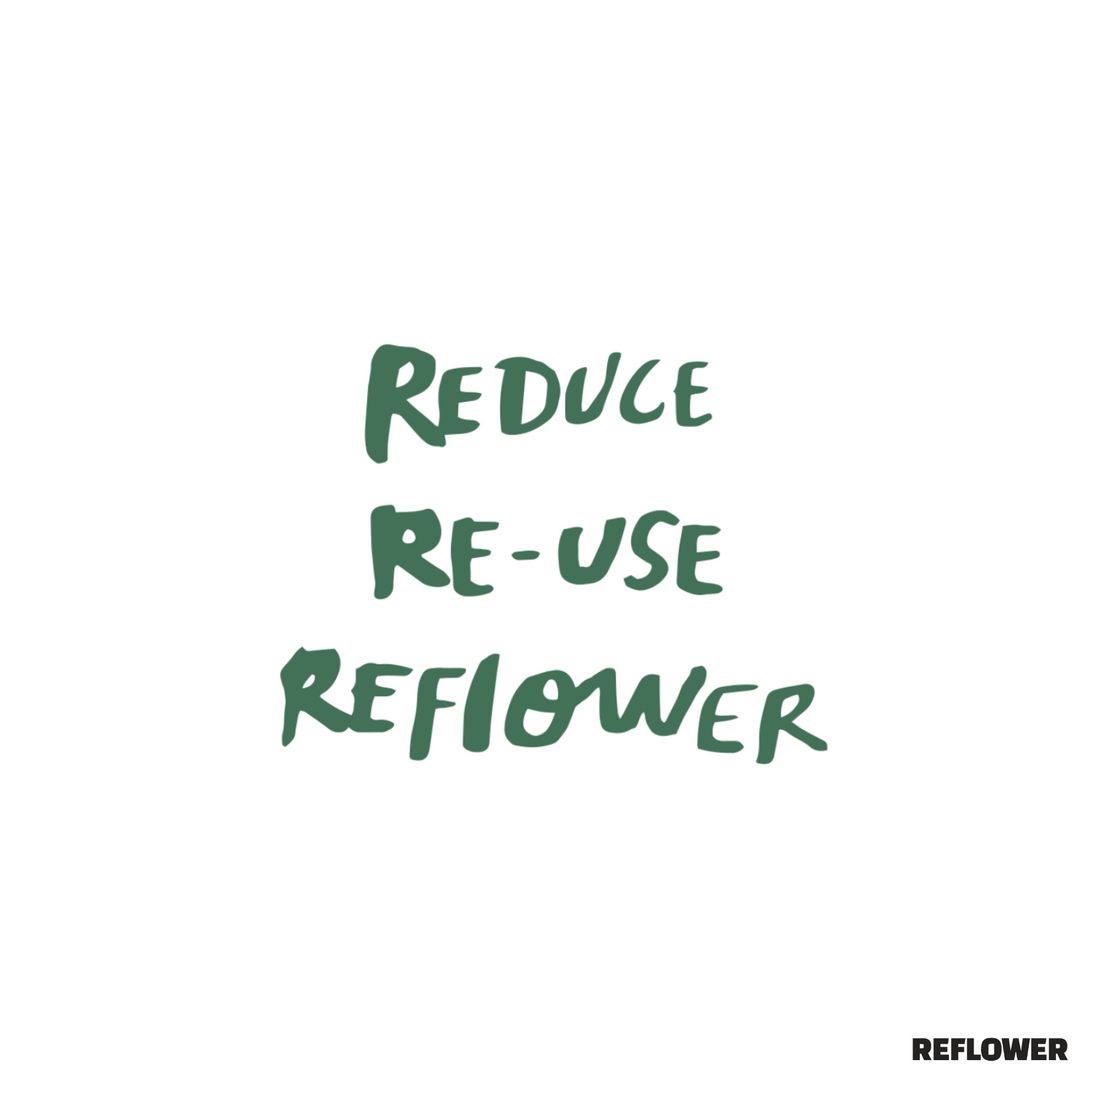 Reflower Refund